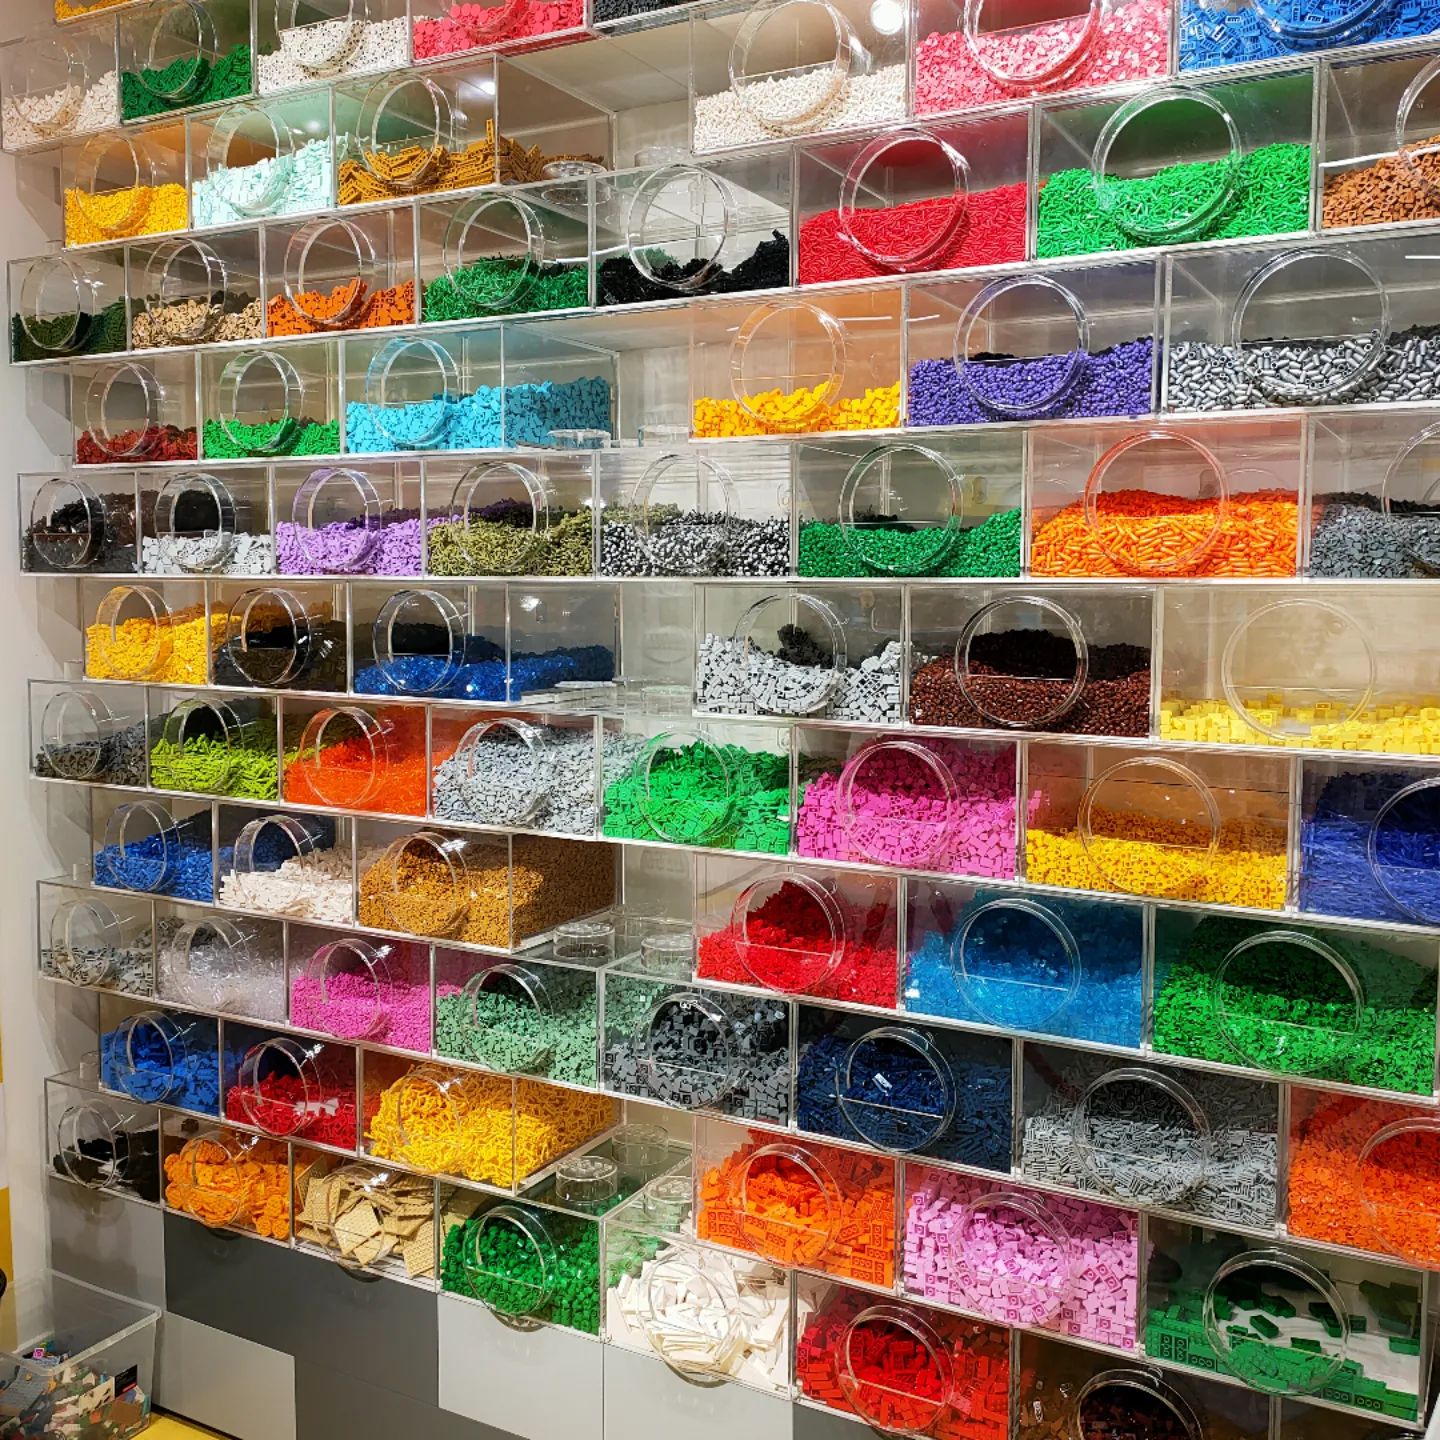 Zajęcia budowania z klocków LEGO